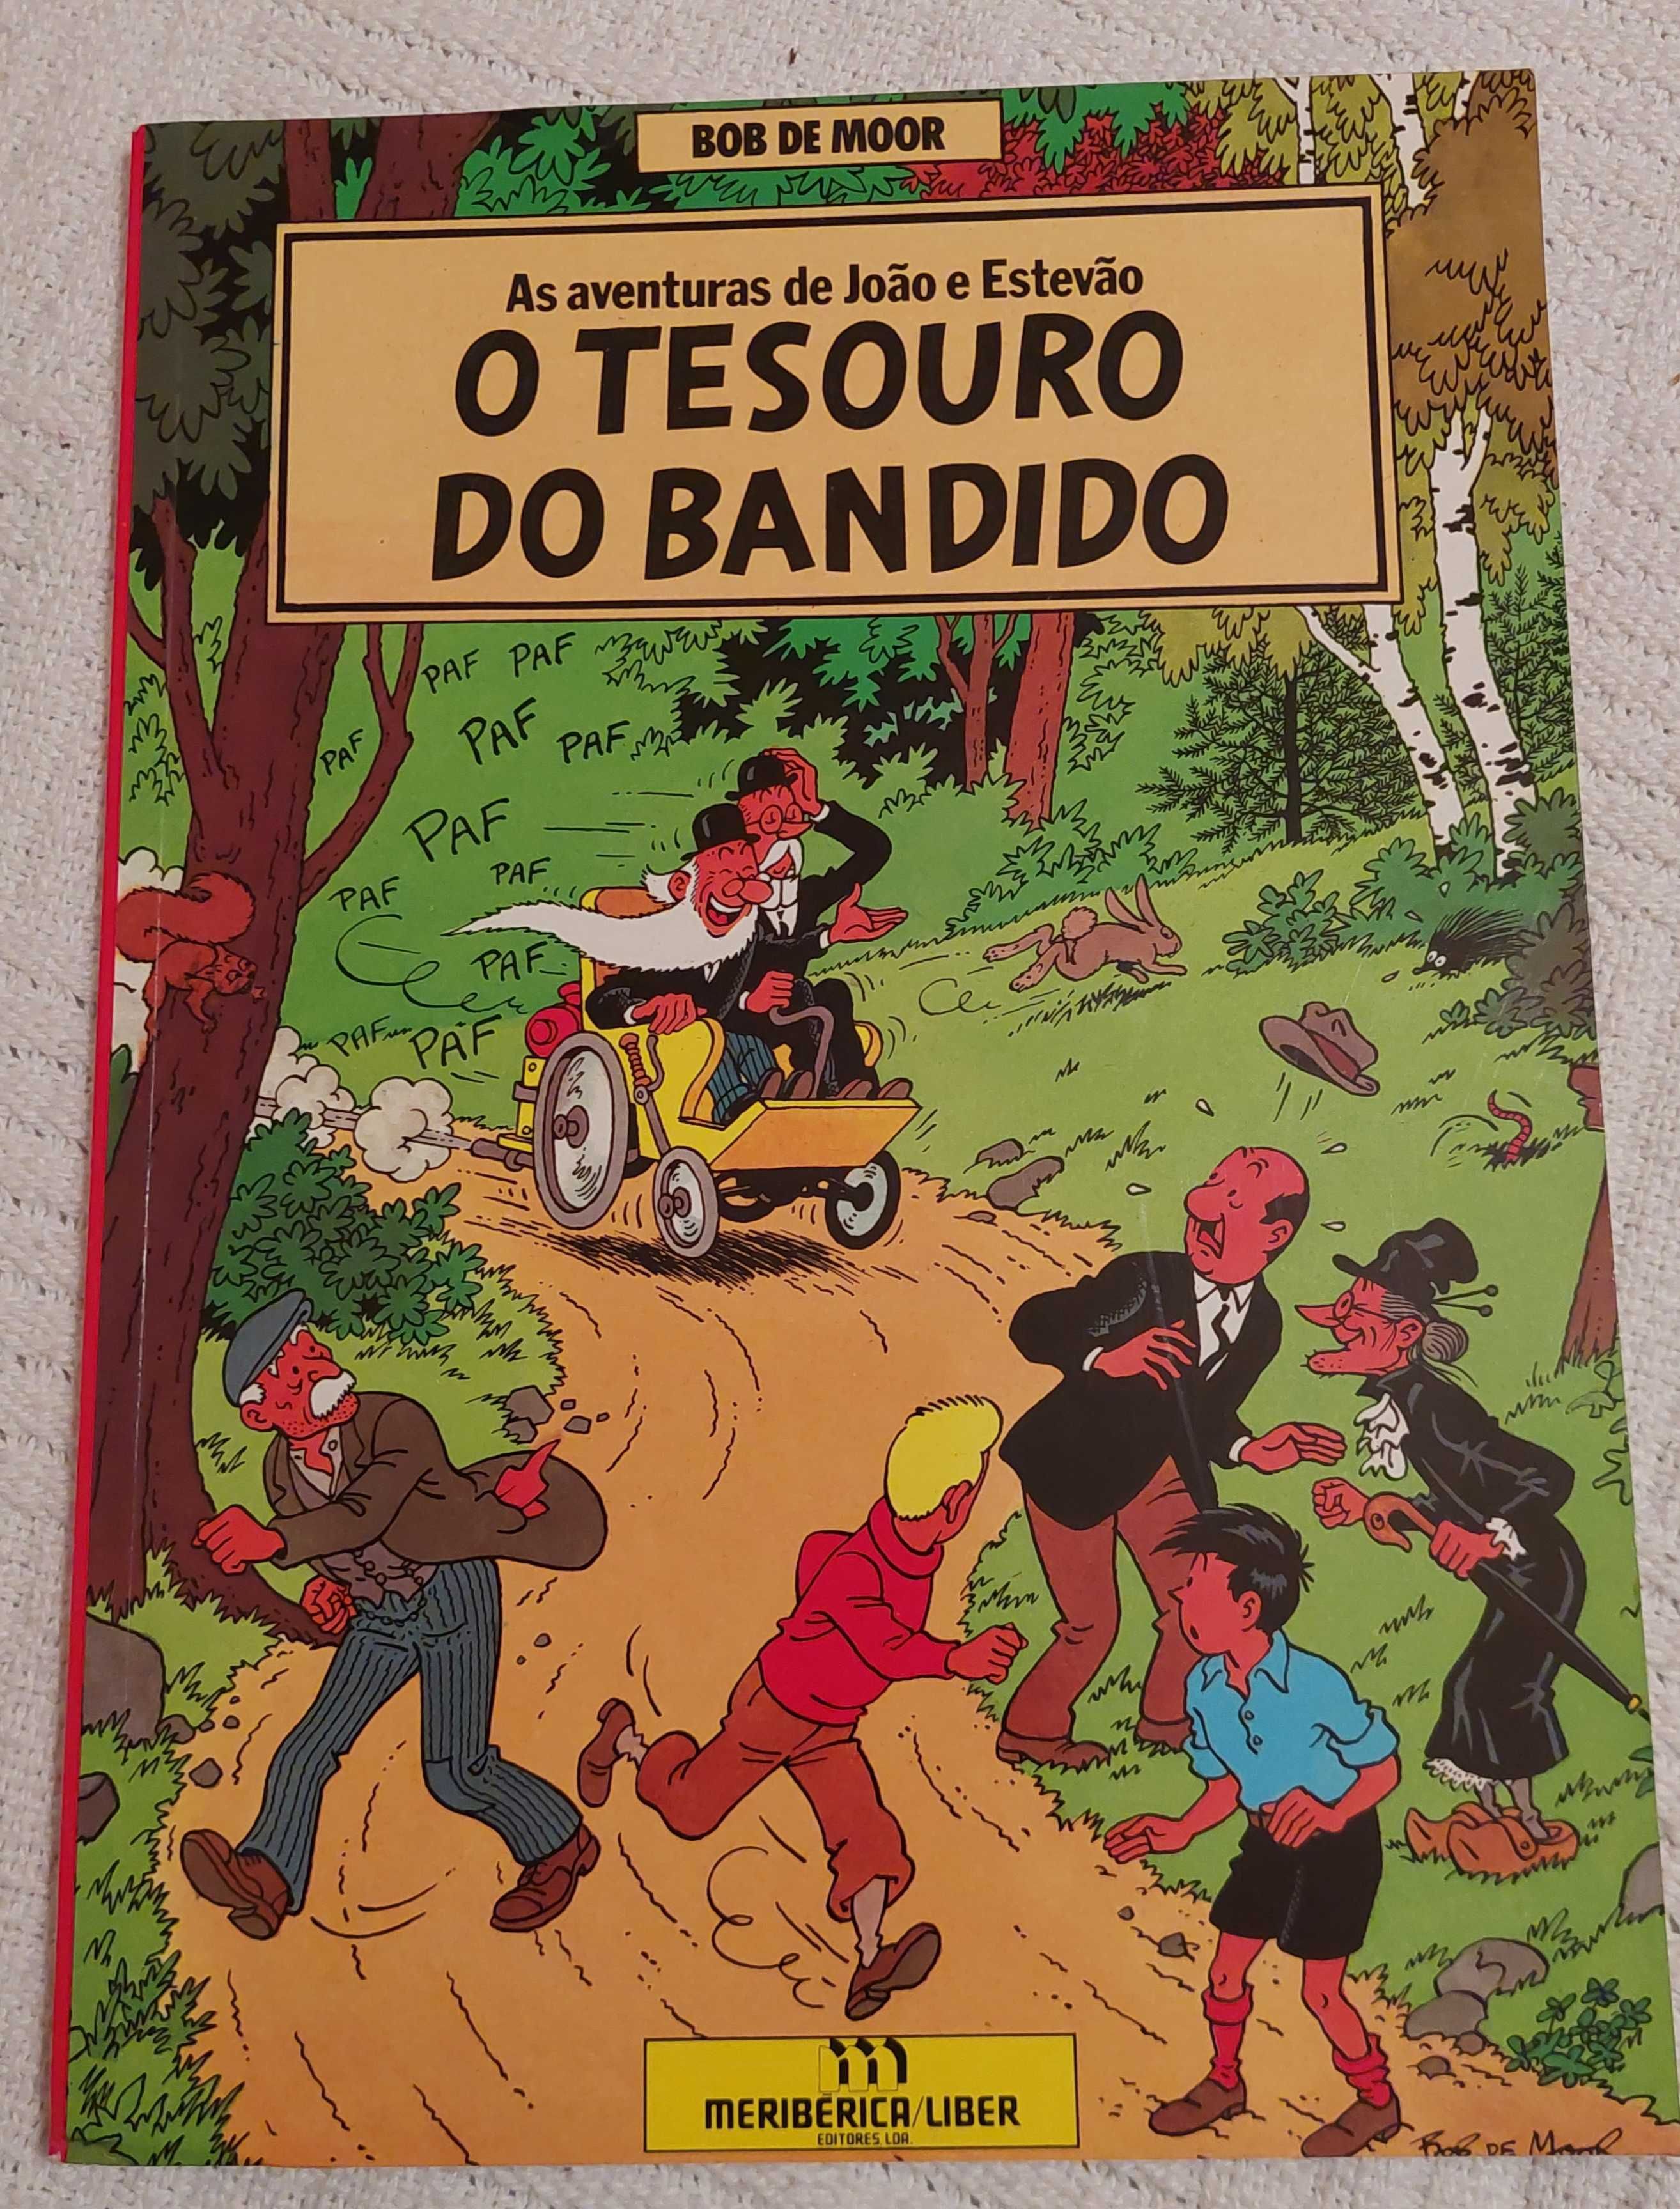 O tesouro do bandido - aventuras de João e Estevão, Bob de Moor